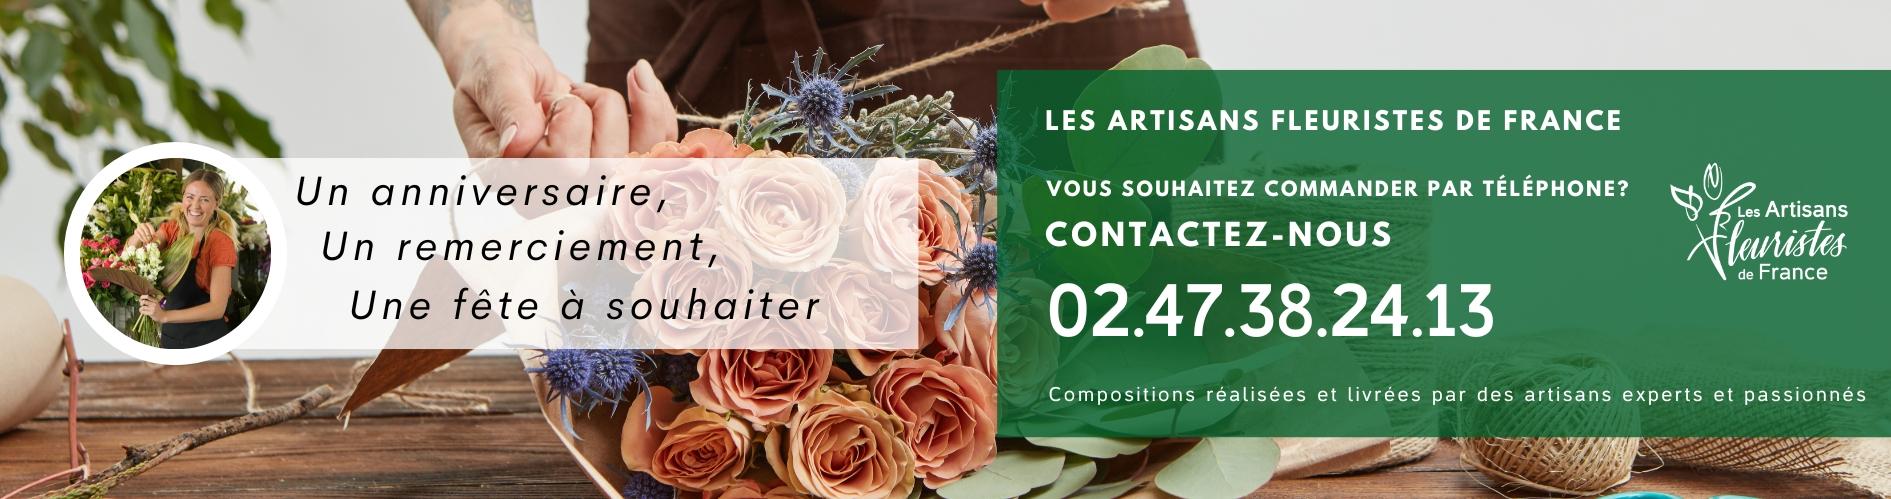 Les Artisans Fleuristes De France, votre boutique de fleurs en ligne